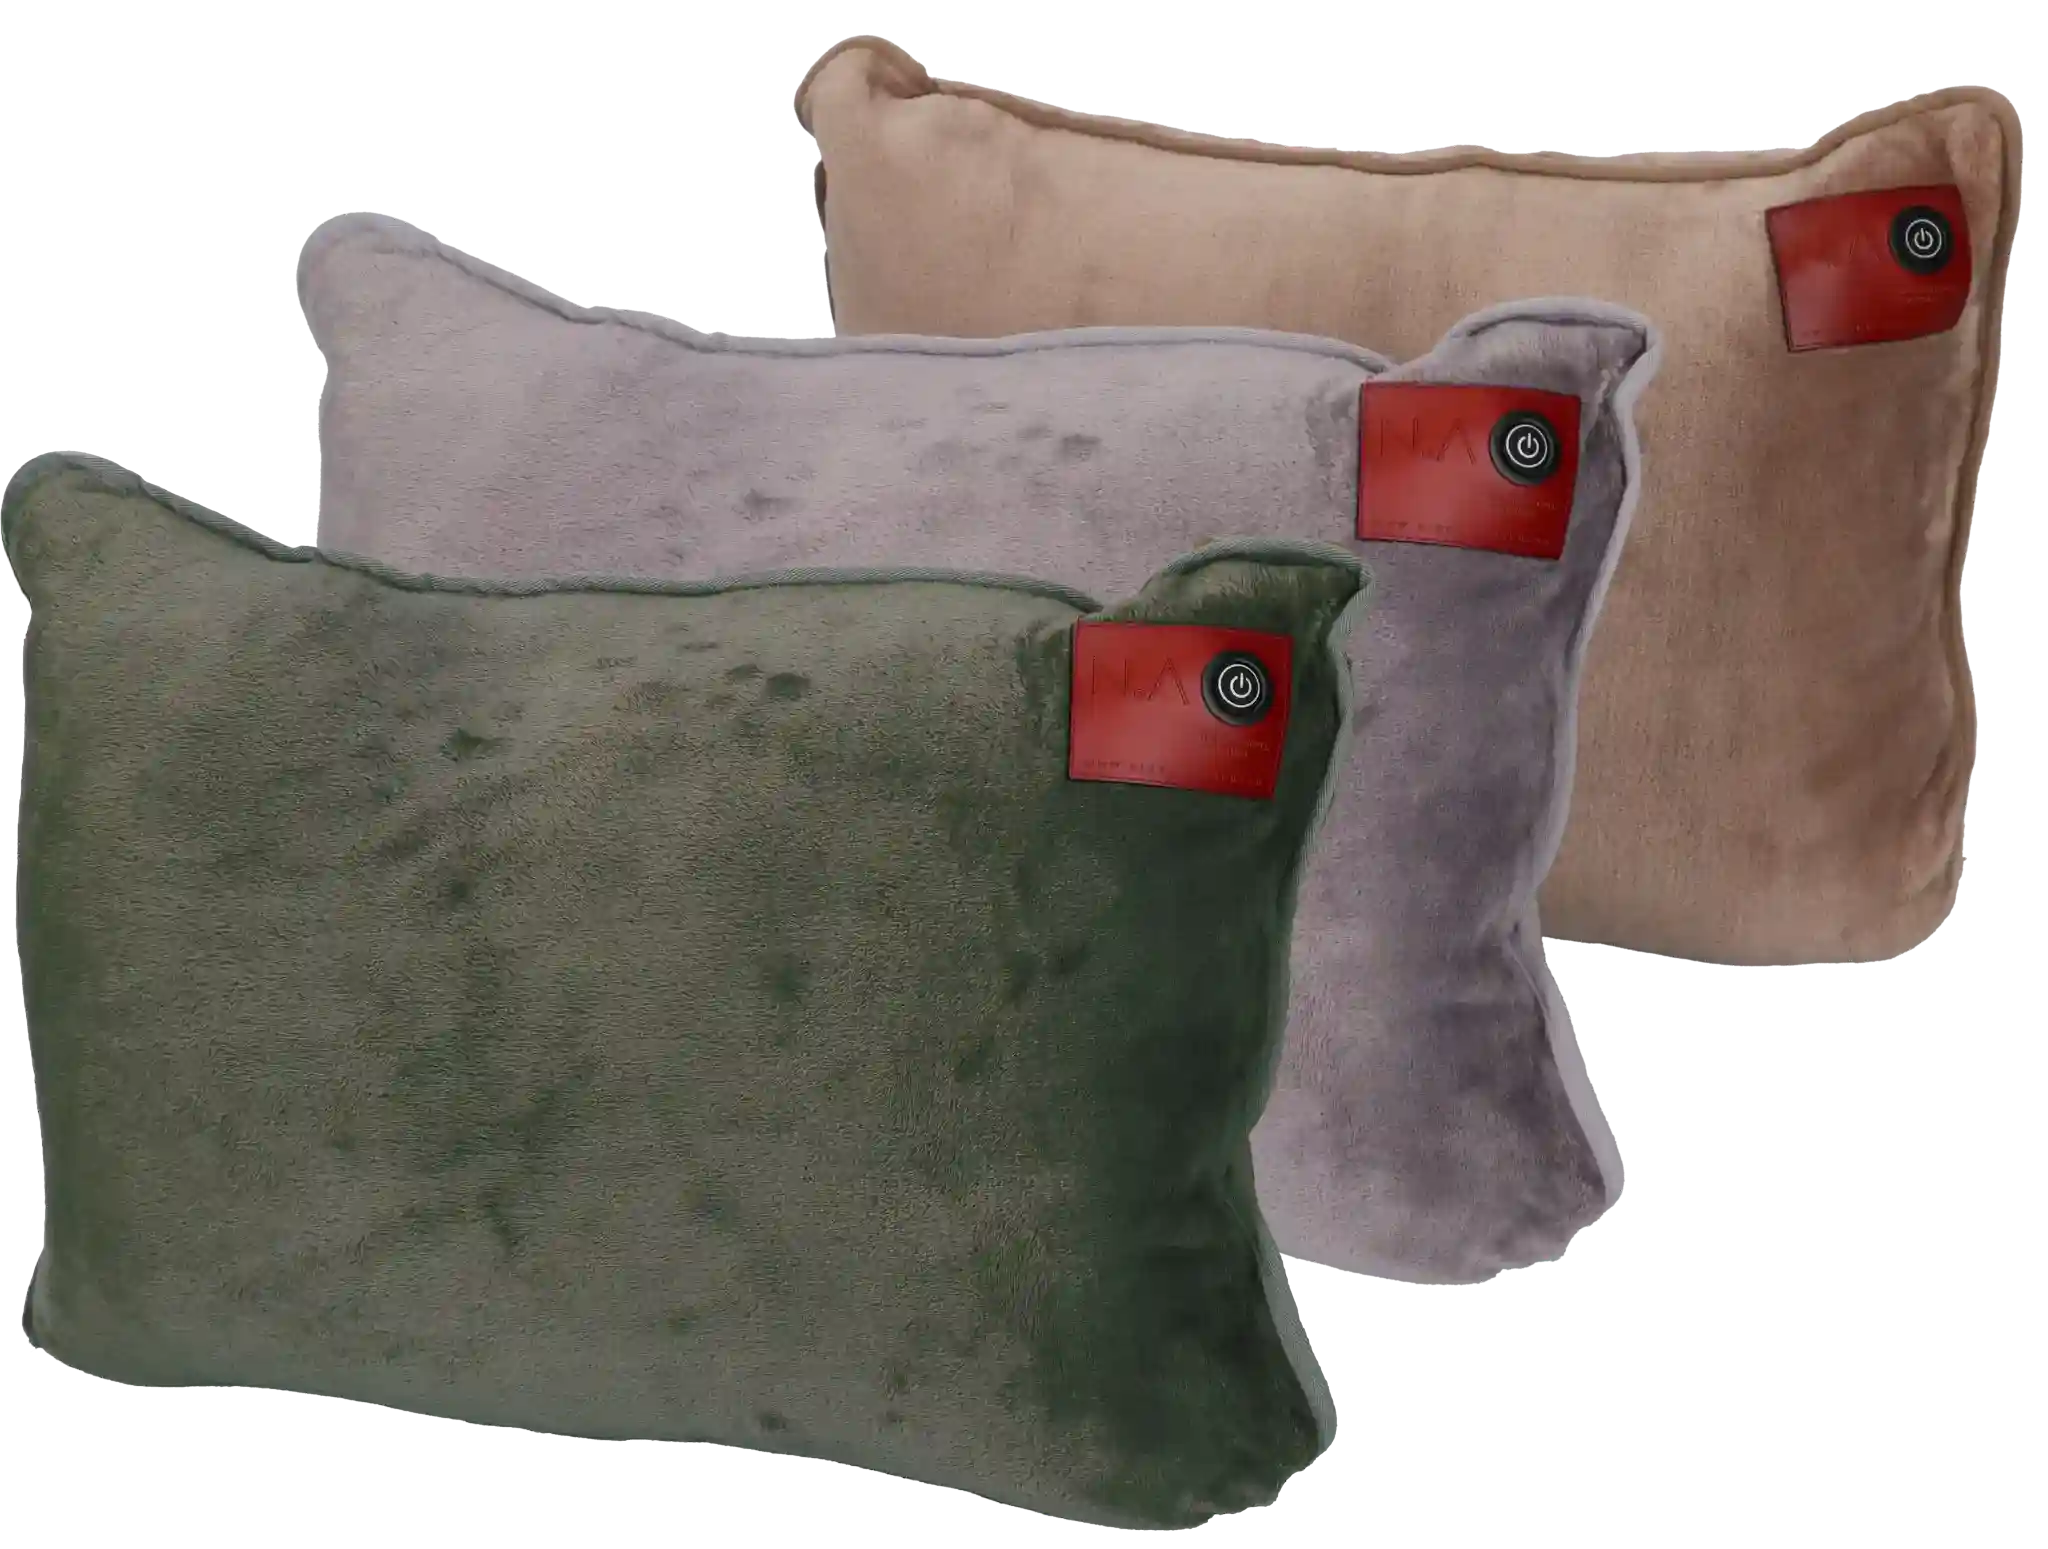 elektrische-warmte-kussens-rug-nek-verwarmingselementen-teddy-fleece-pillow-3-colors-nikki-amsterdam-beste-warmtekussen-verwarmd-sierkussen